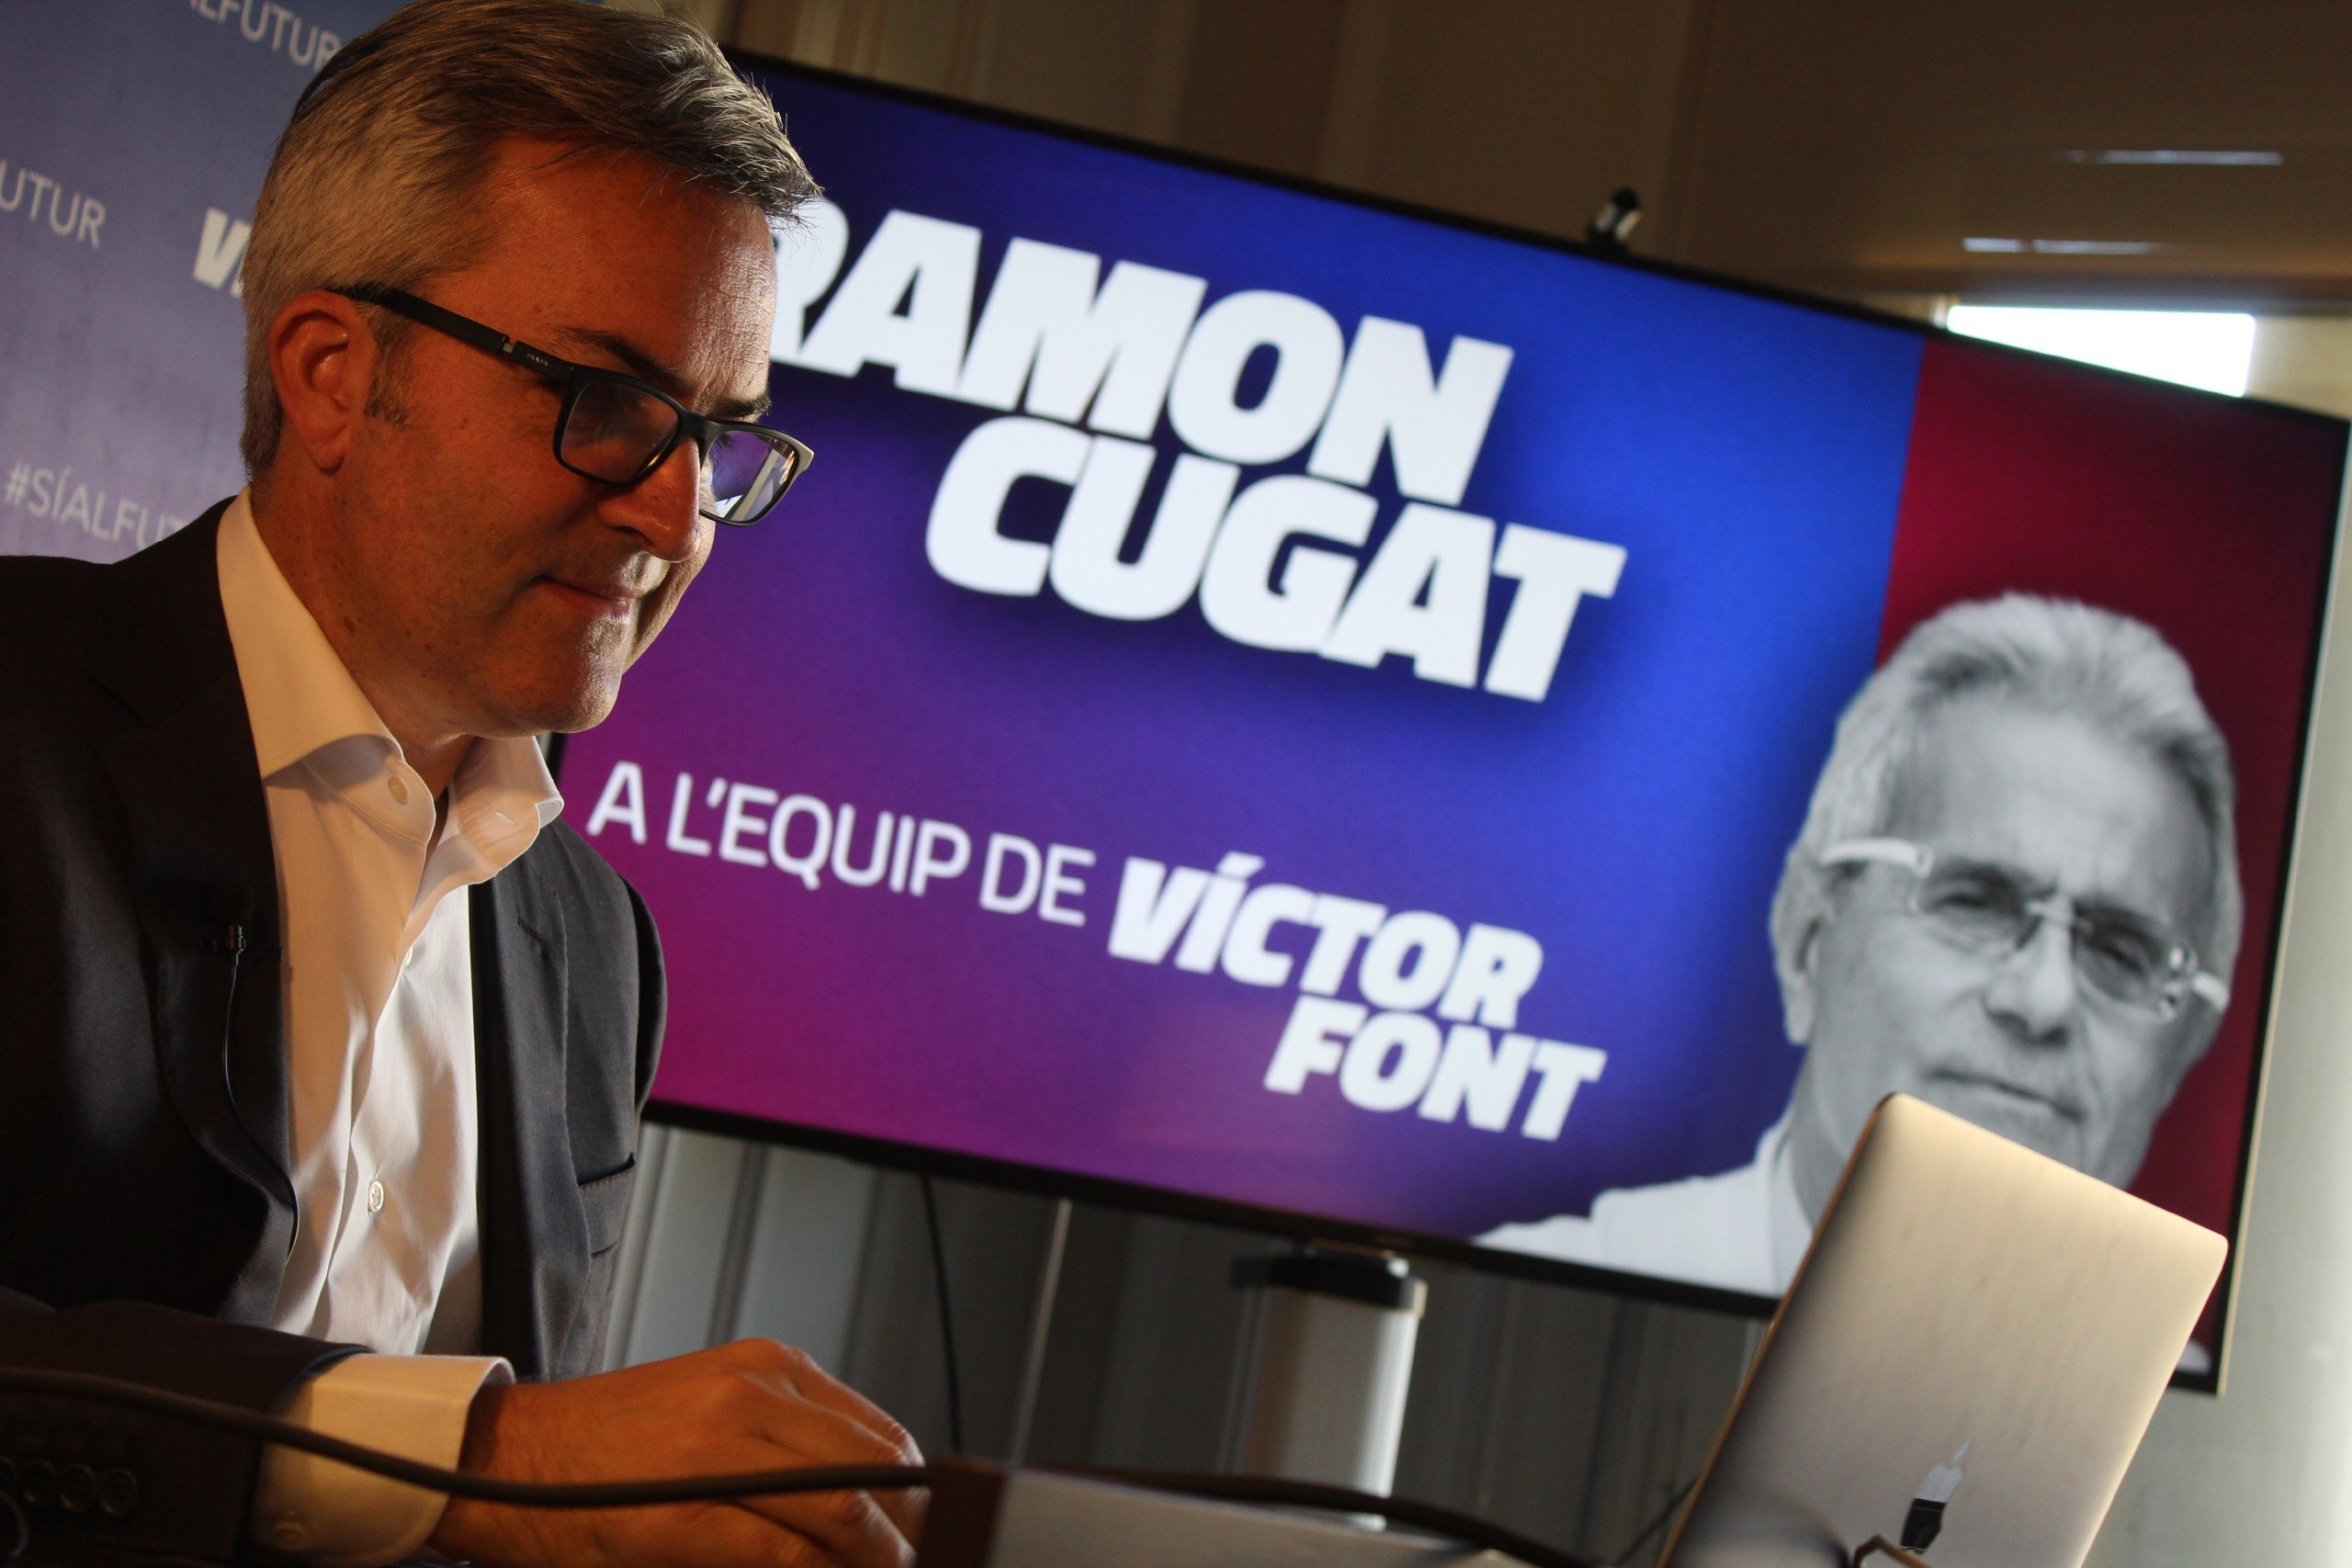 Imagen de la presentación de Ramon Cugat en la candidatura de Víctor Font / 'Sí al futur'